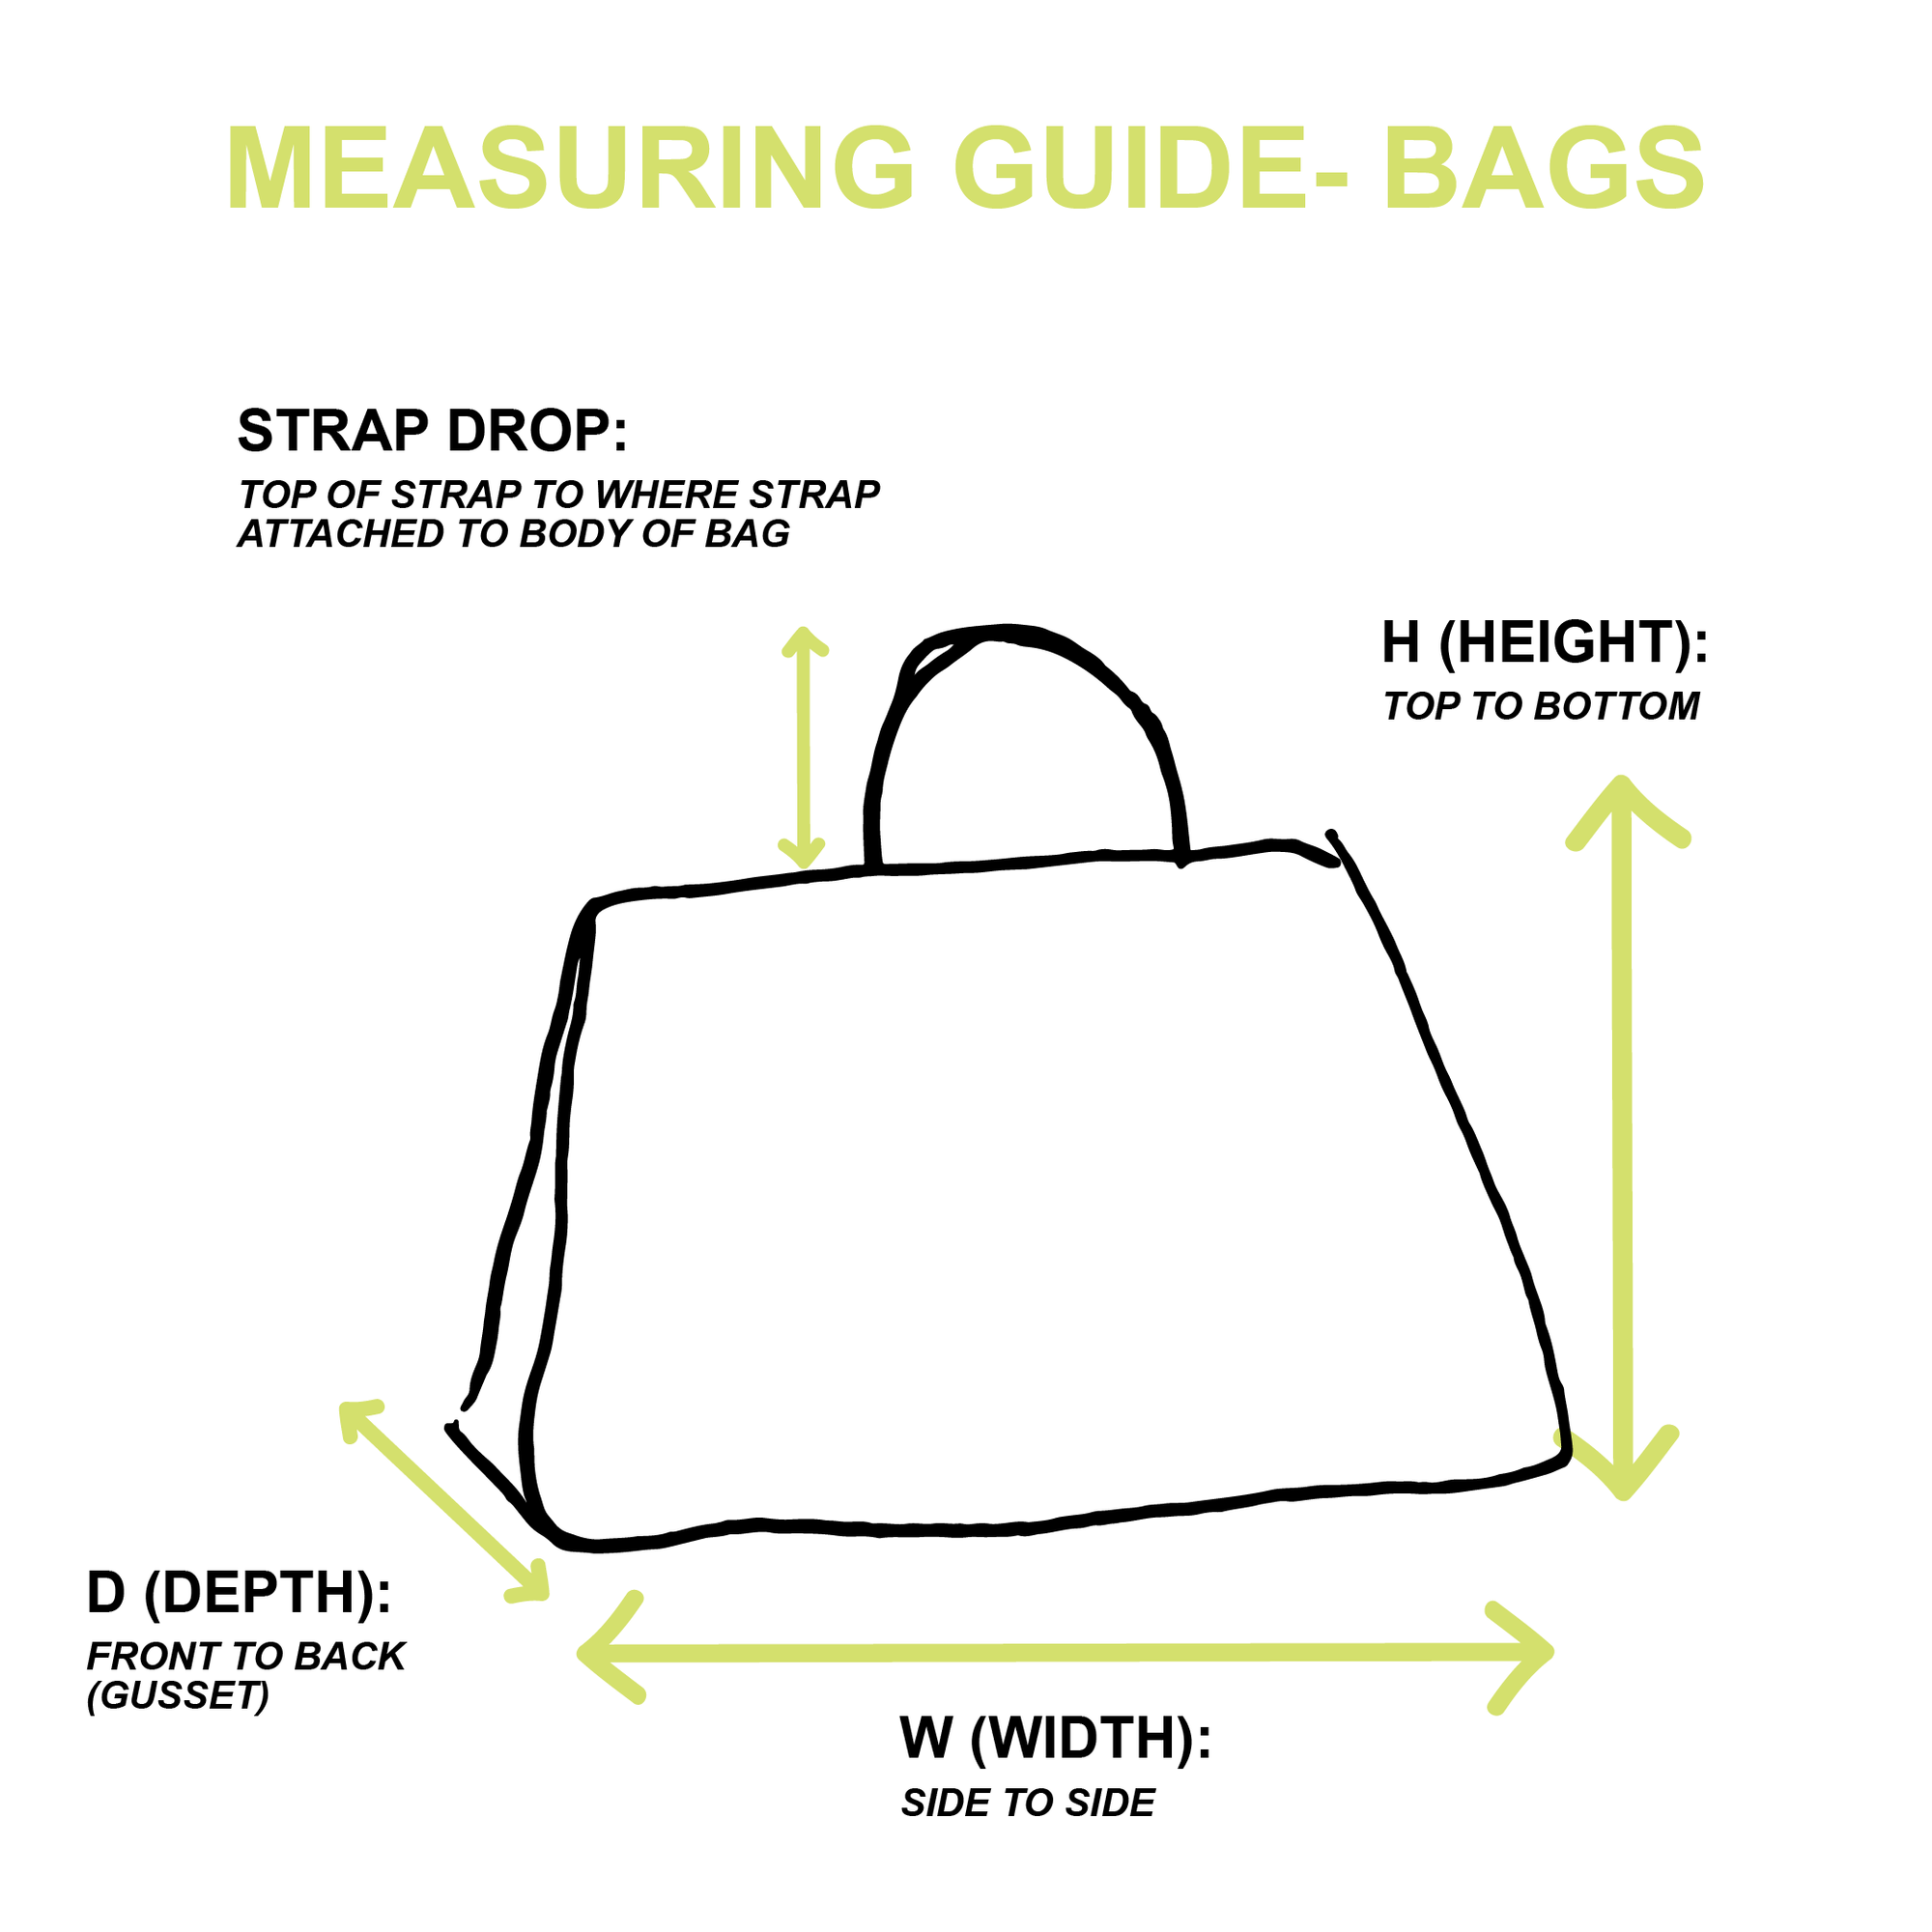 Miu Miu Beige Shoulder Bag - Handbags